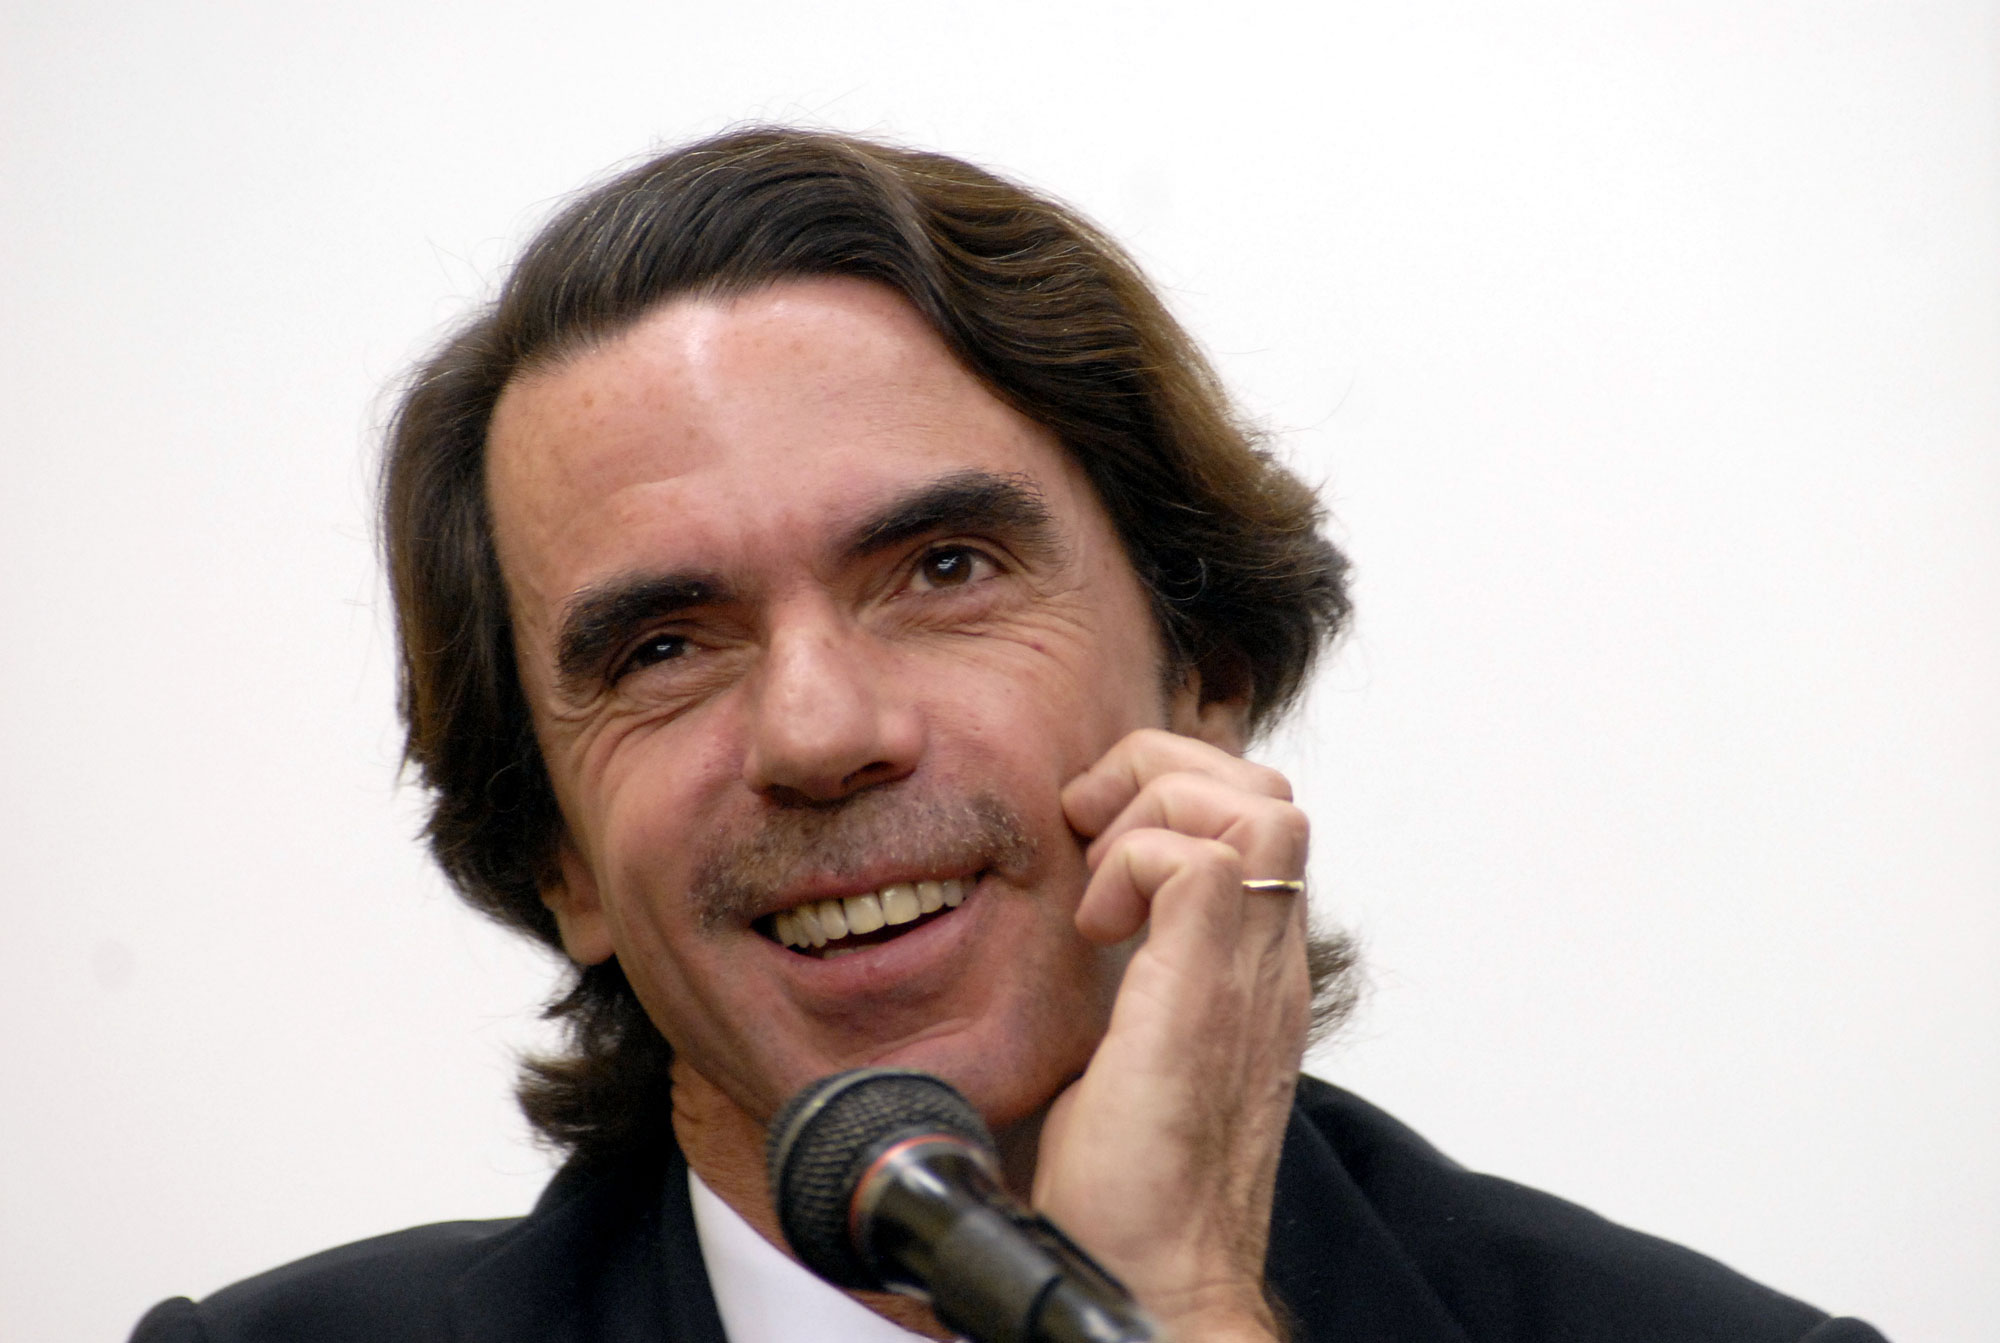 Aznar cobrava comissões para conseguir negócios com Kadhafi